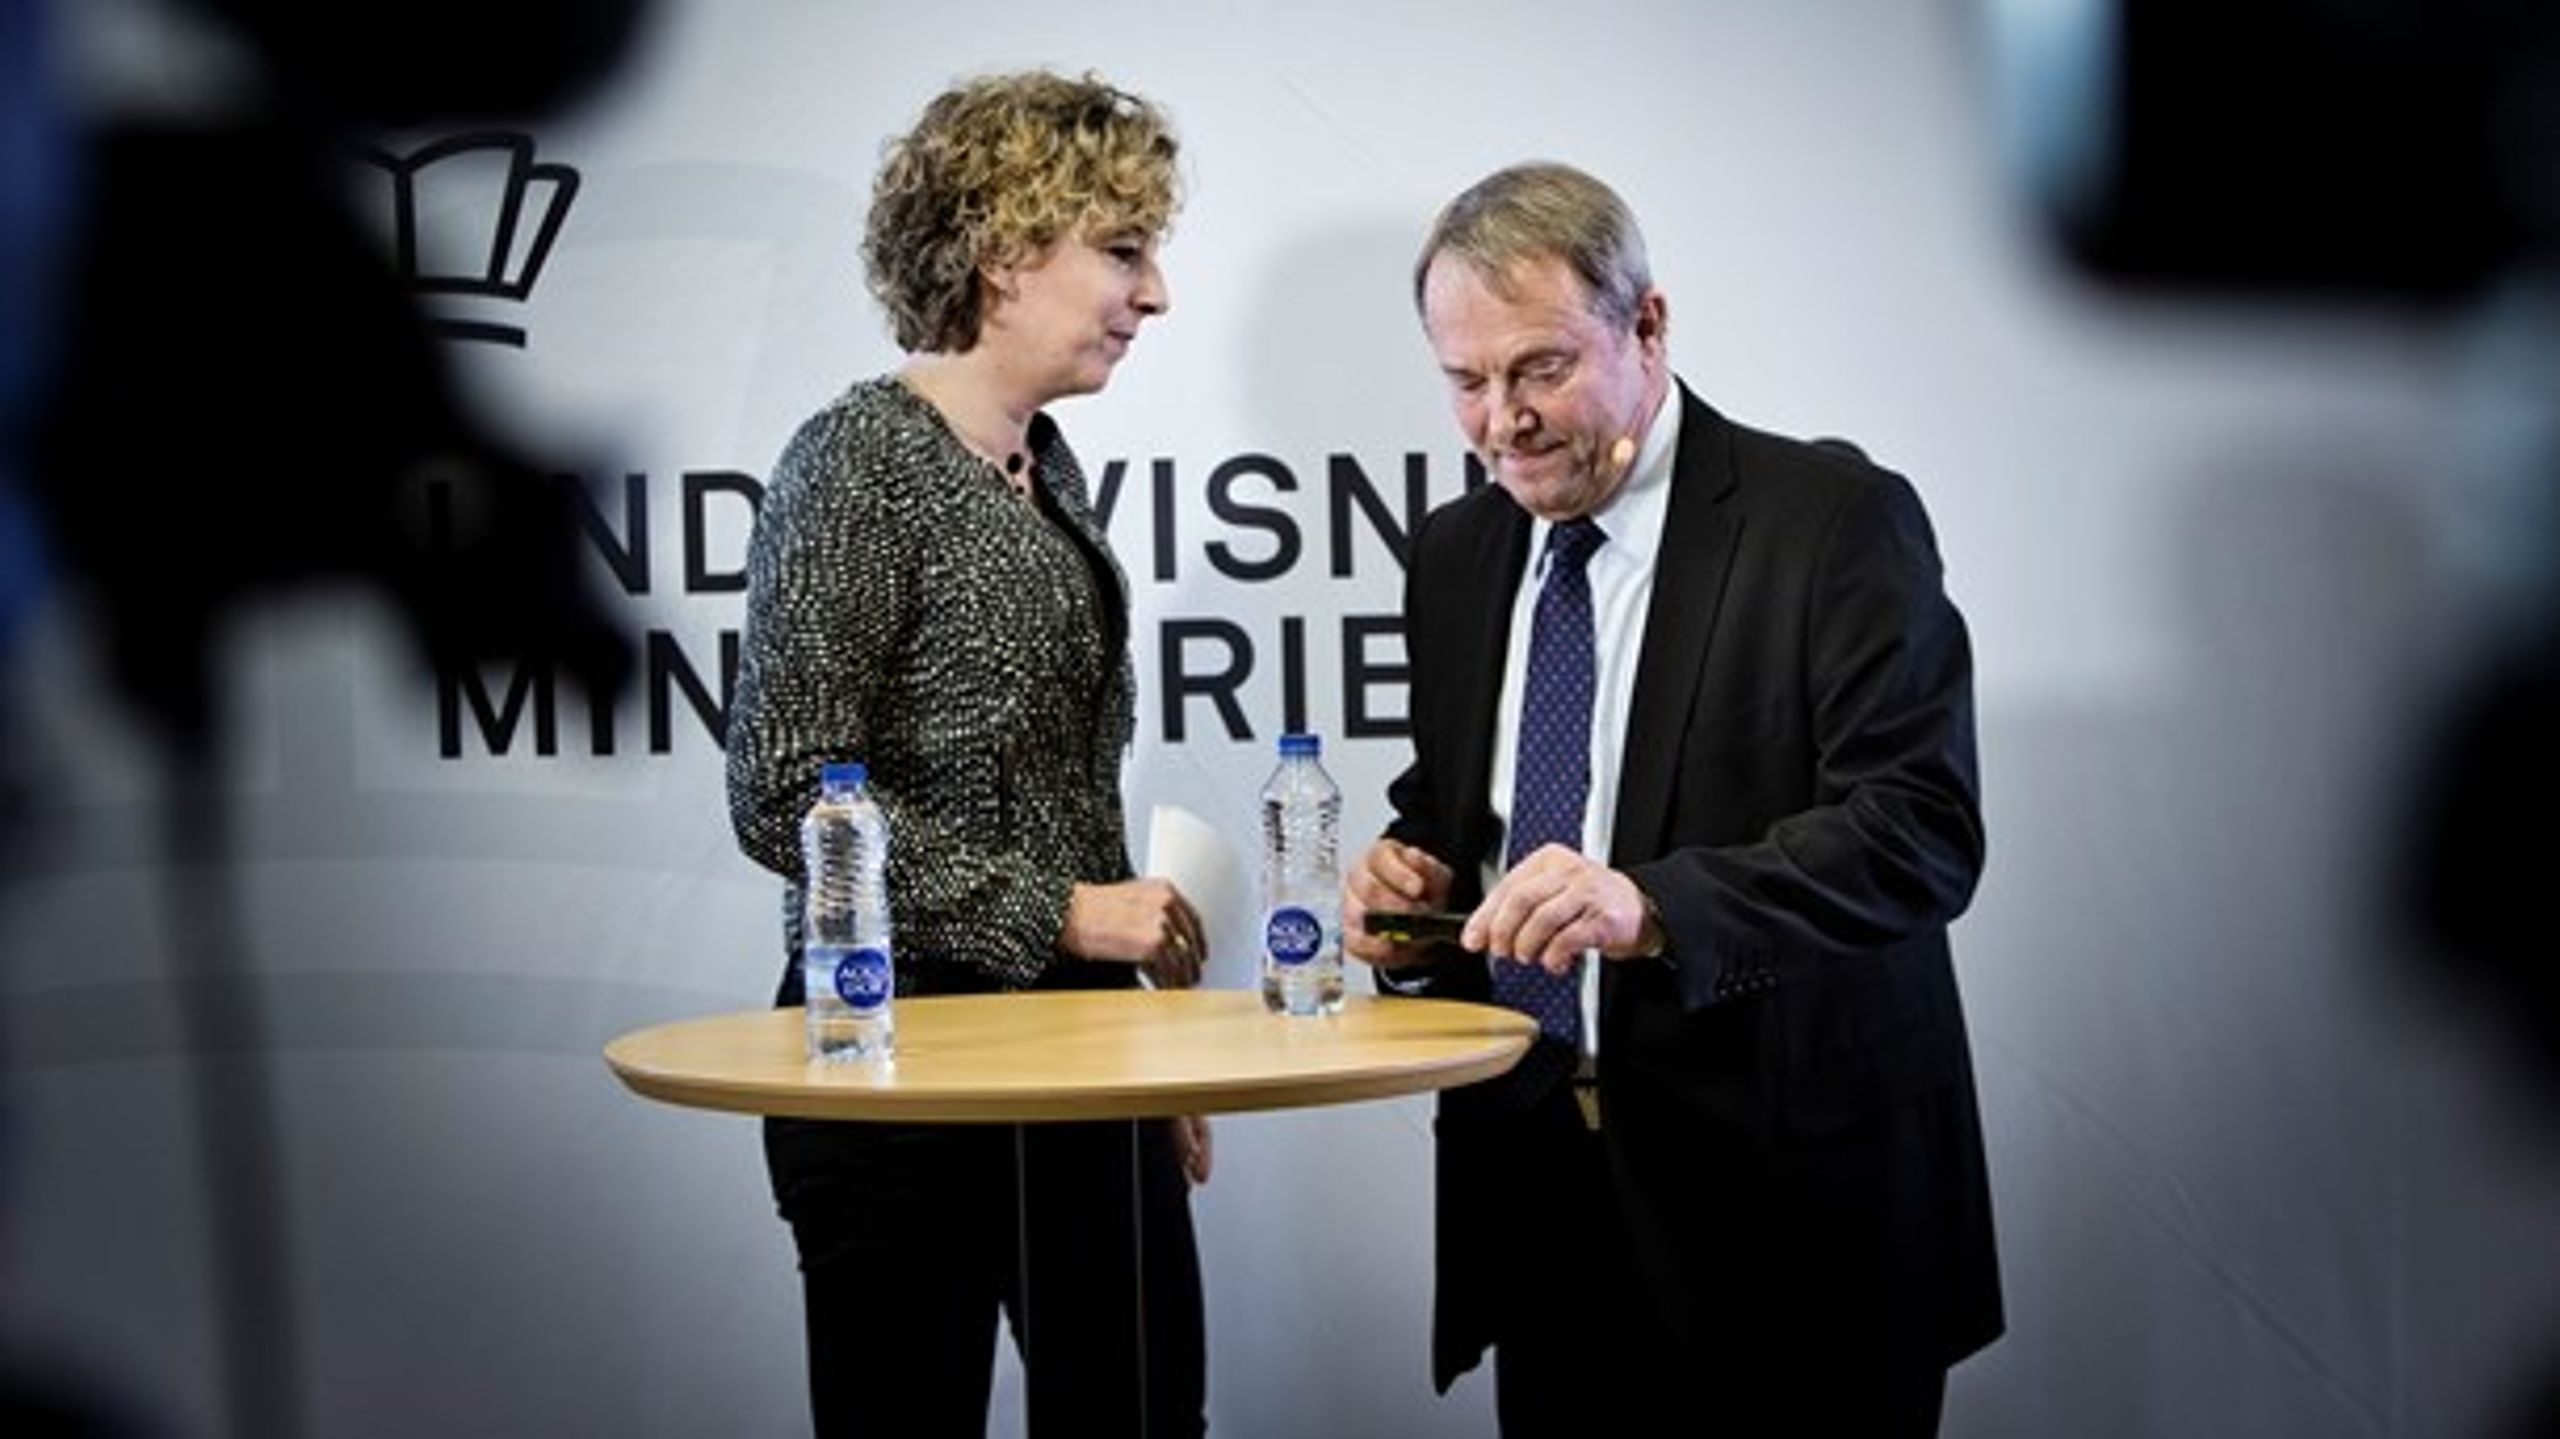 Daværende undervisningsminister Christine Antorini (S) sammen med&nbsp;professor Niels Egelund&nbsp;i december 2013, da de sammen præsenterede&nbsp;resultaterne af PISA
2012-undersøgelsen.